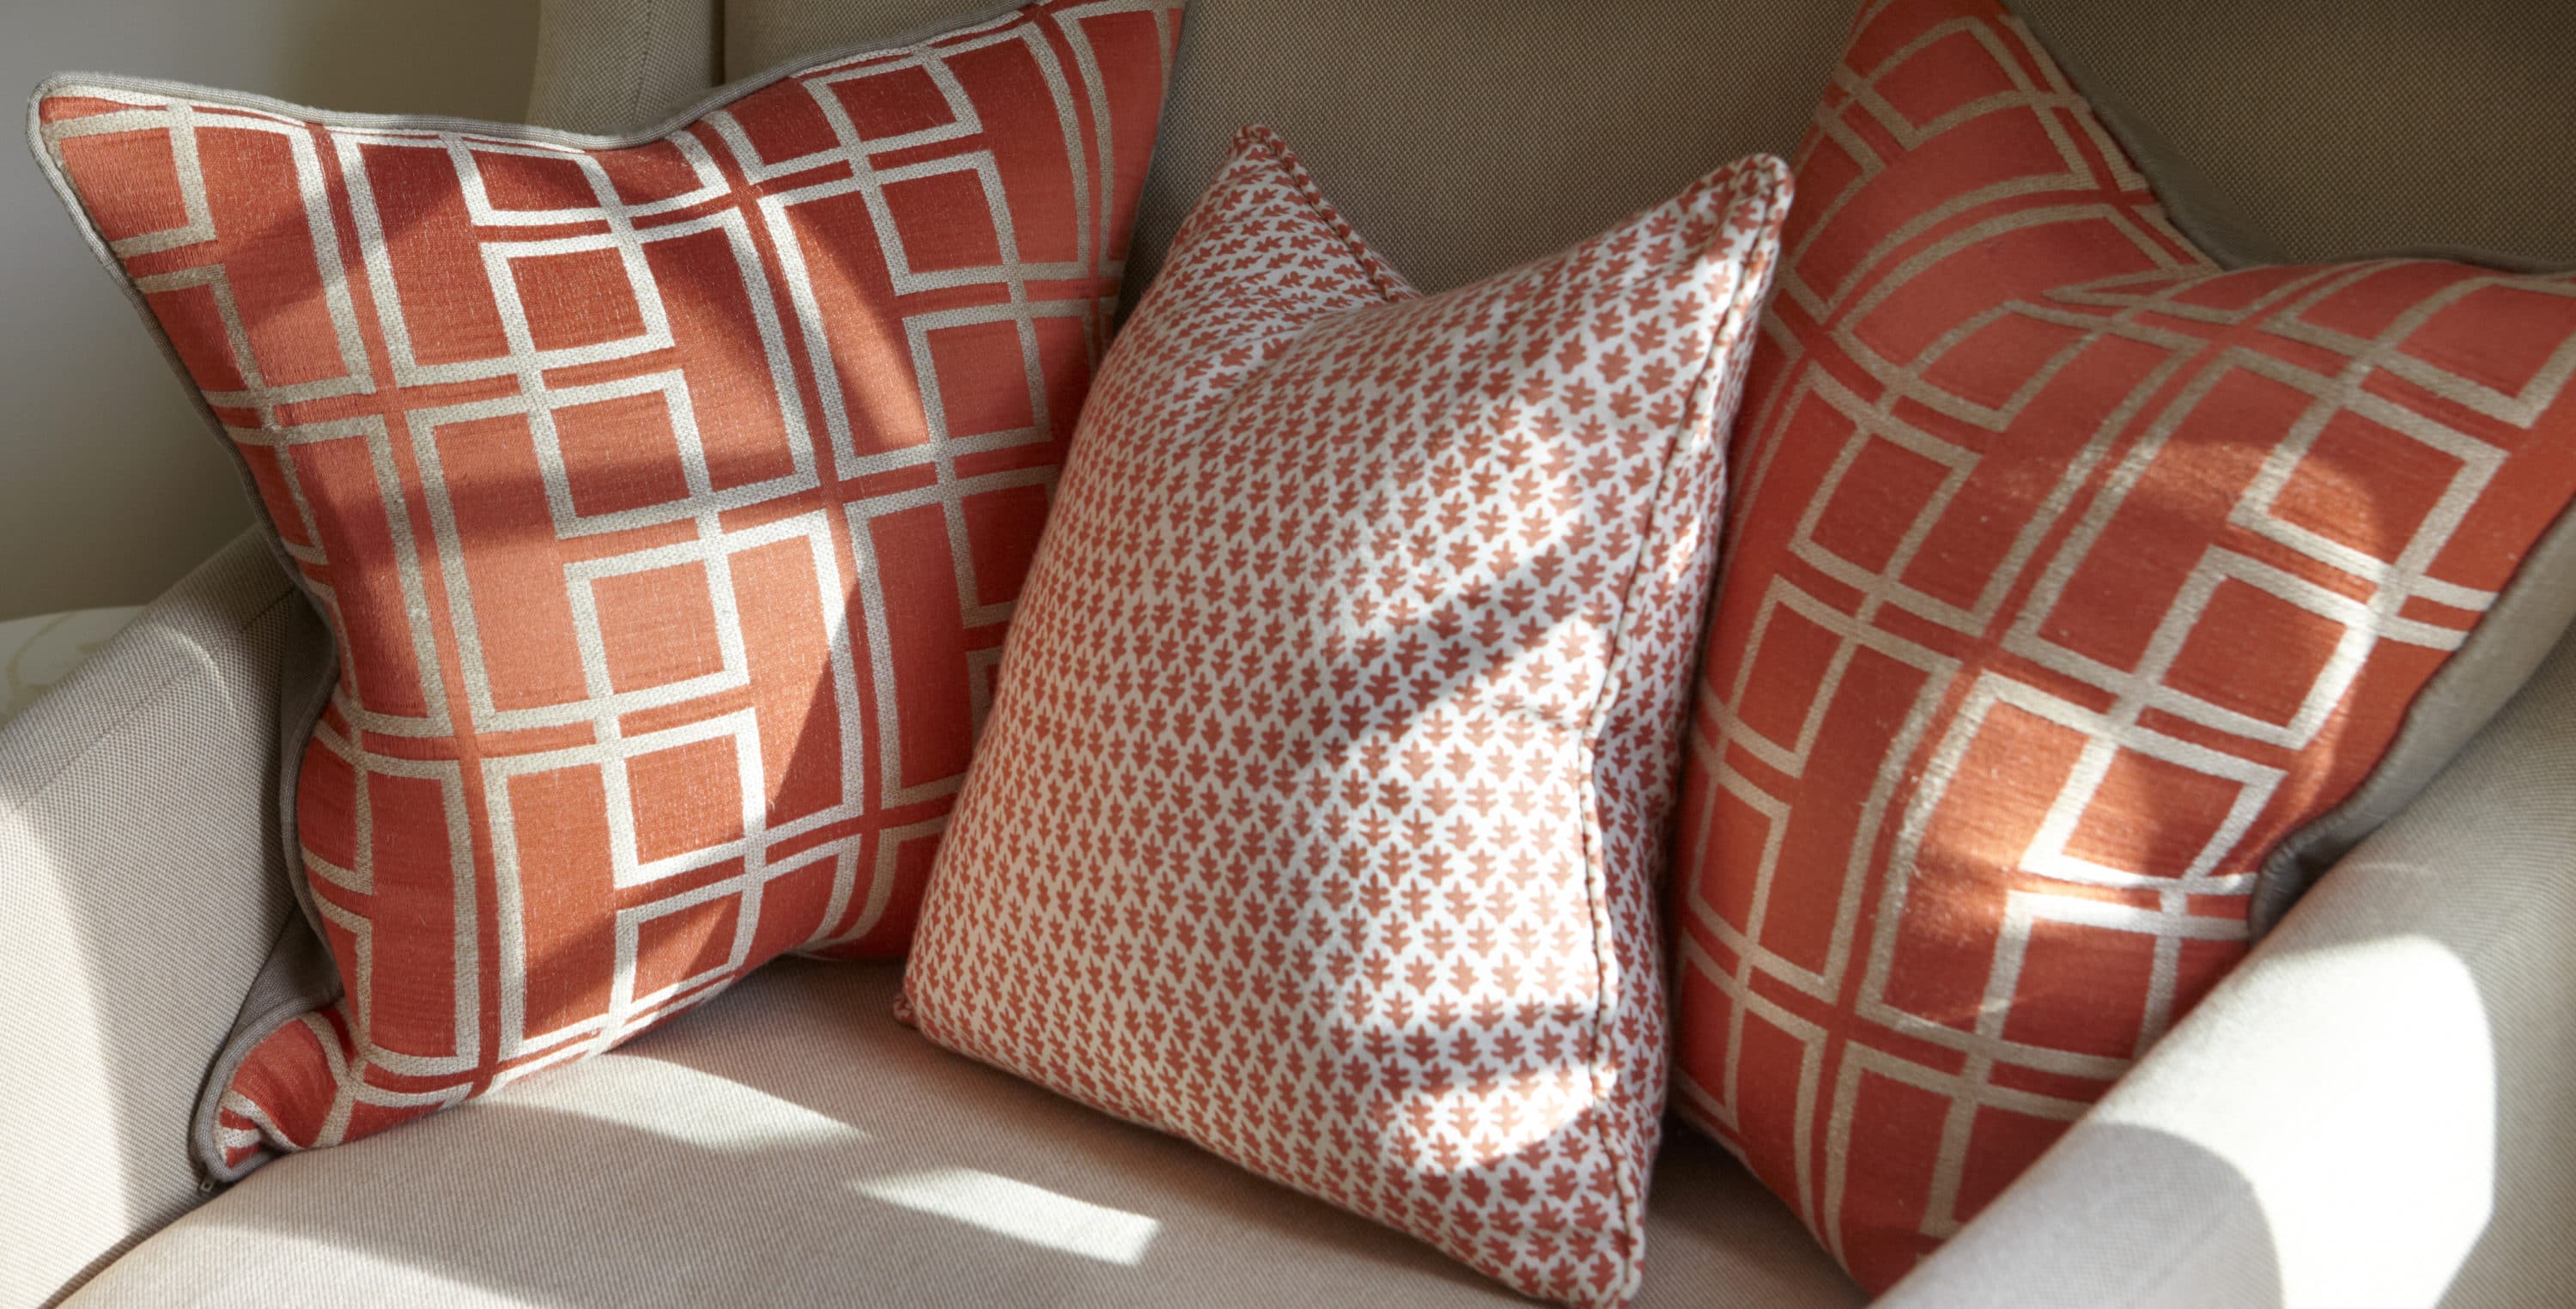 pantone colour pillows to enhance neutral pillows for interior design